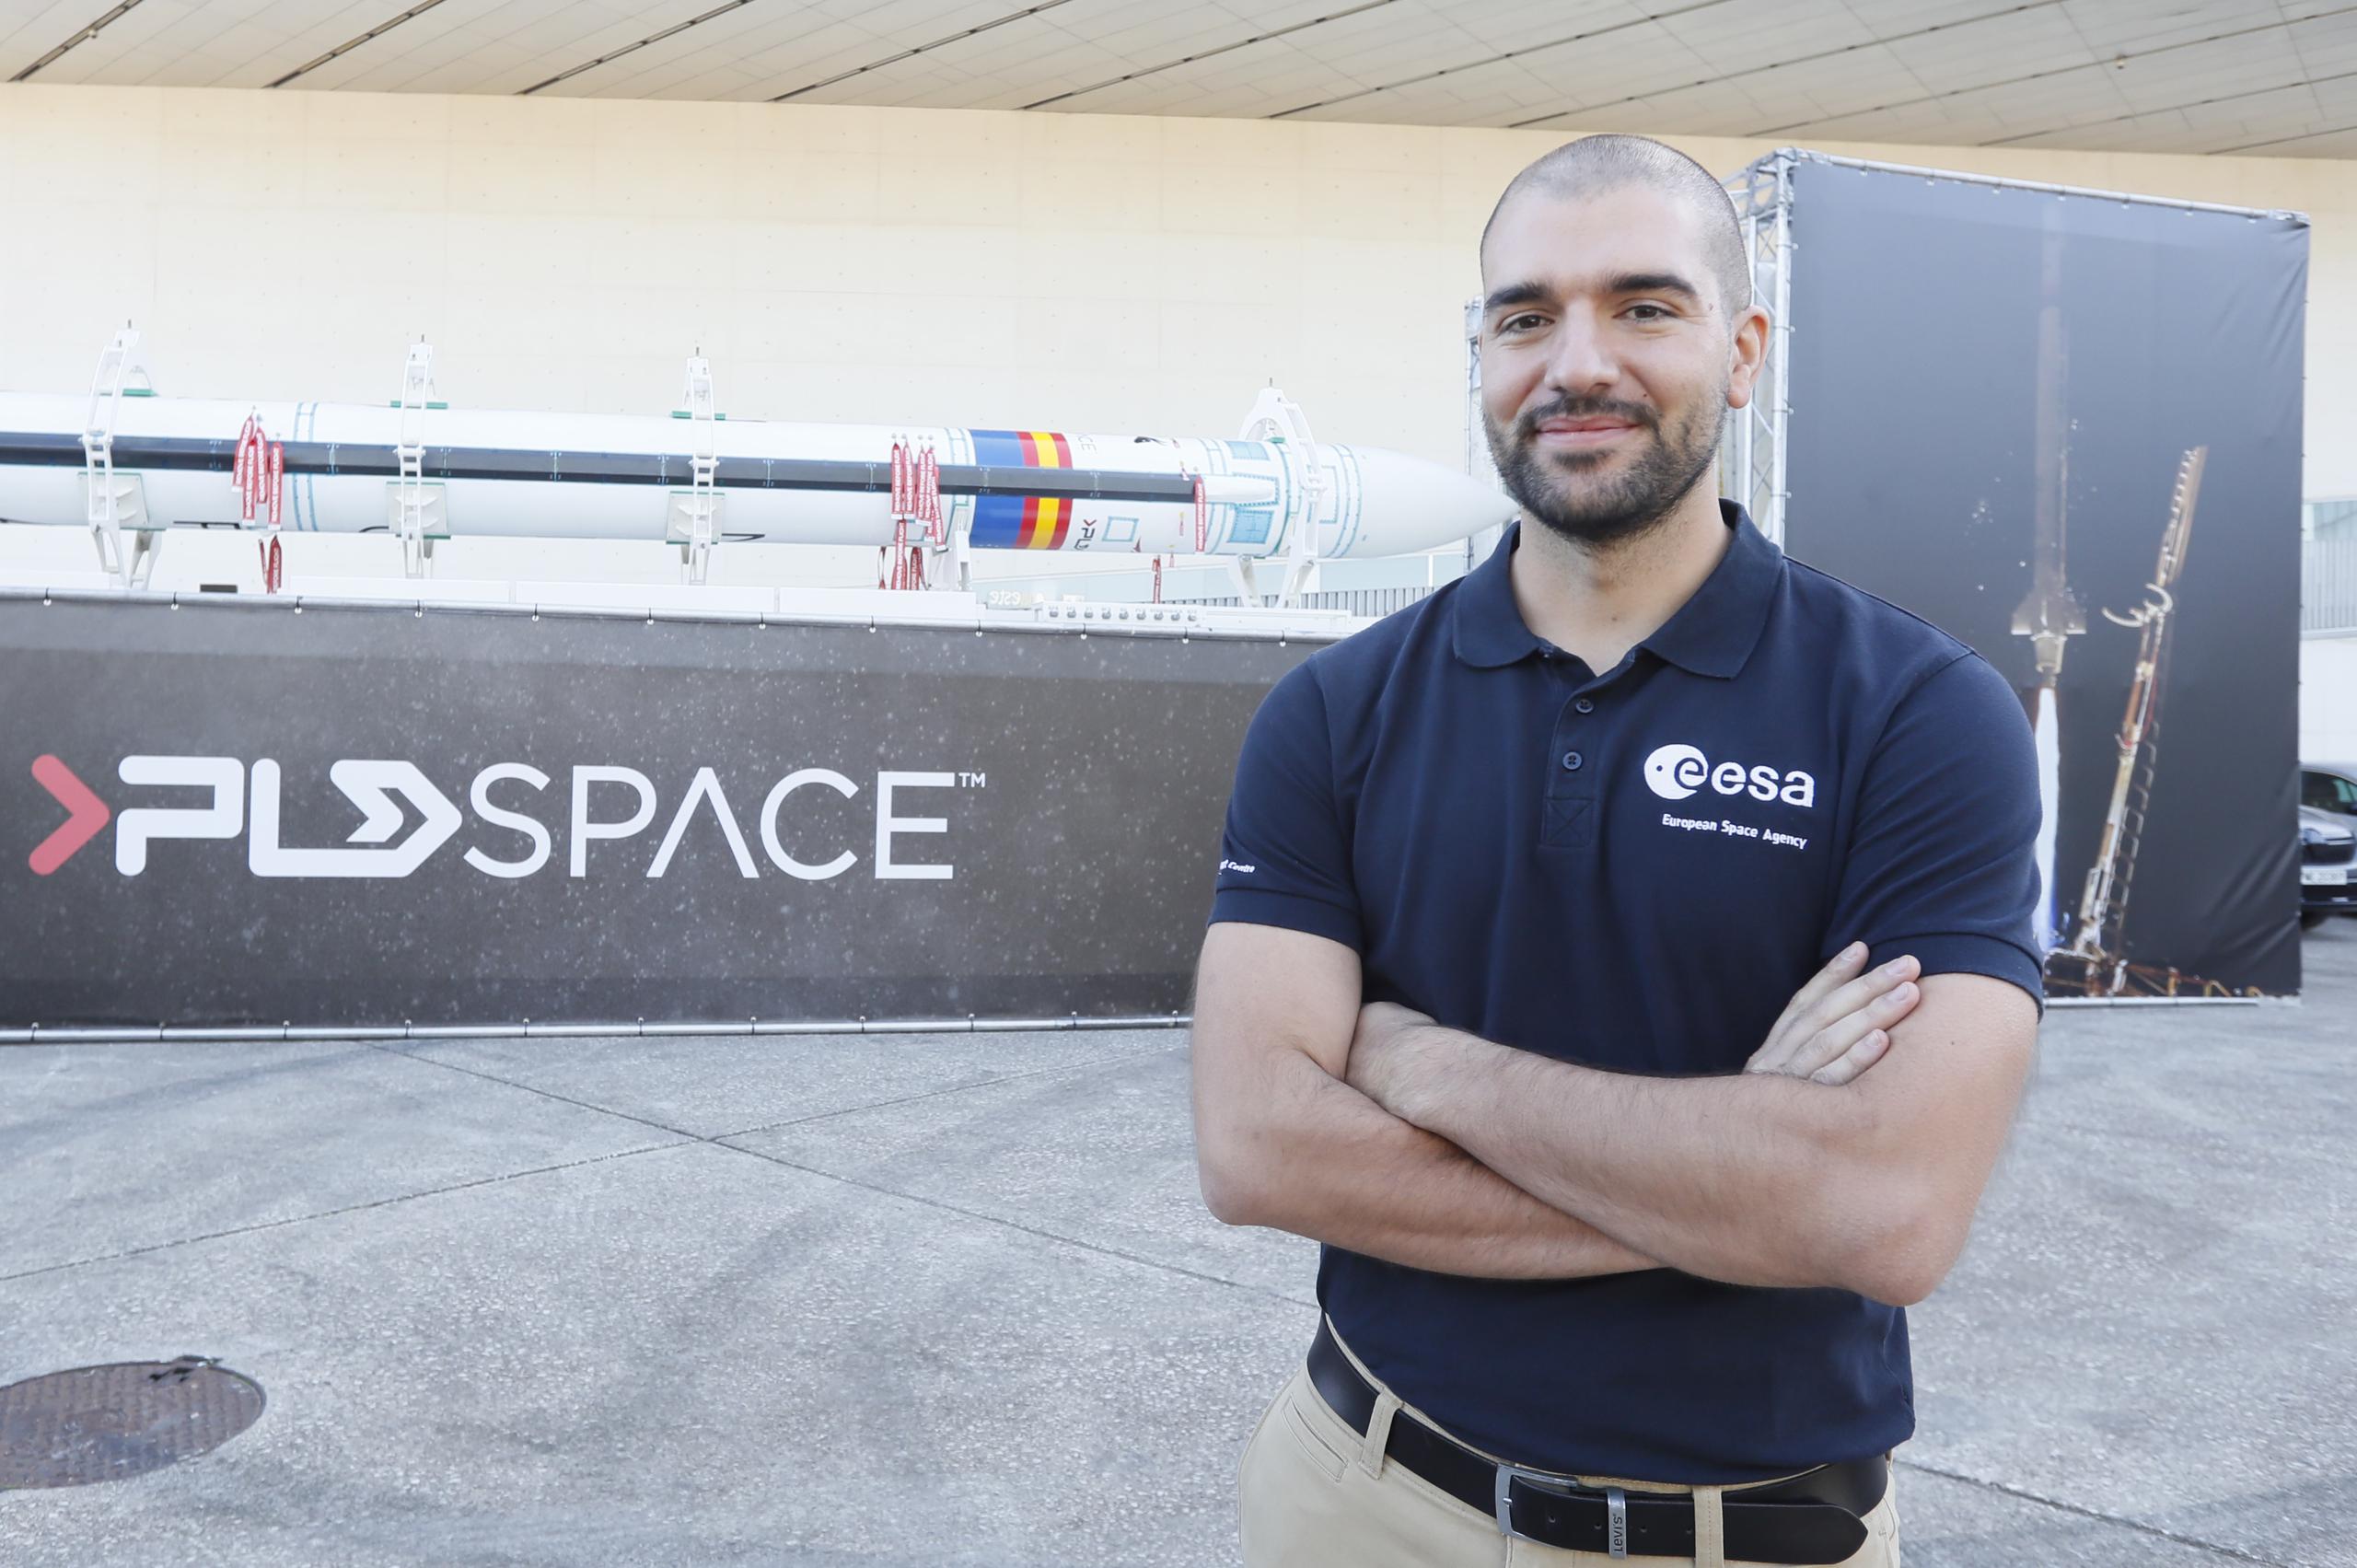 Foto de archivo del español Pablo Álvarez, que se graduará este lunes como astronauta de la Agencia Espacial Europea. EFE/José Manuel Vidal
